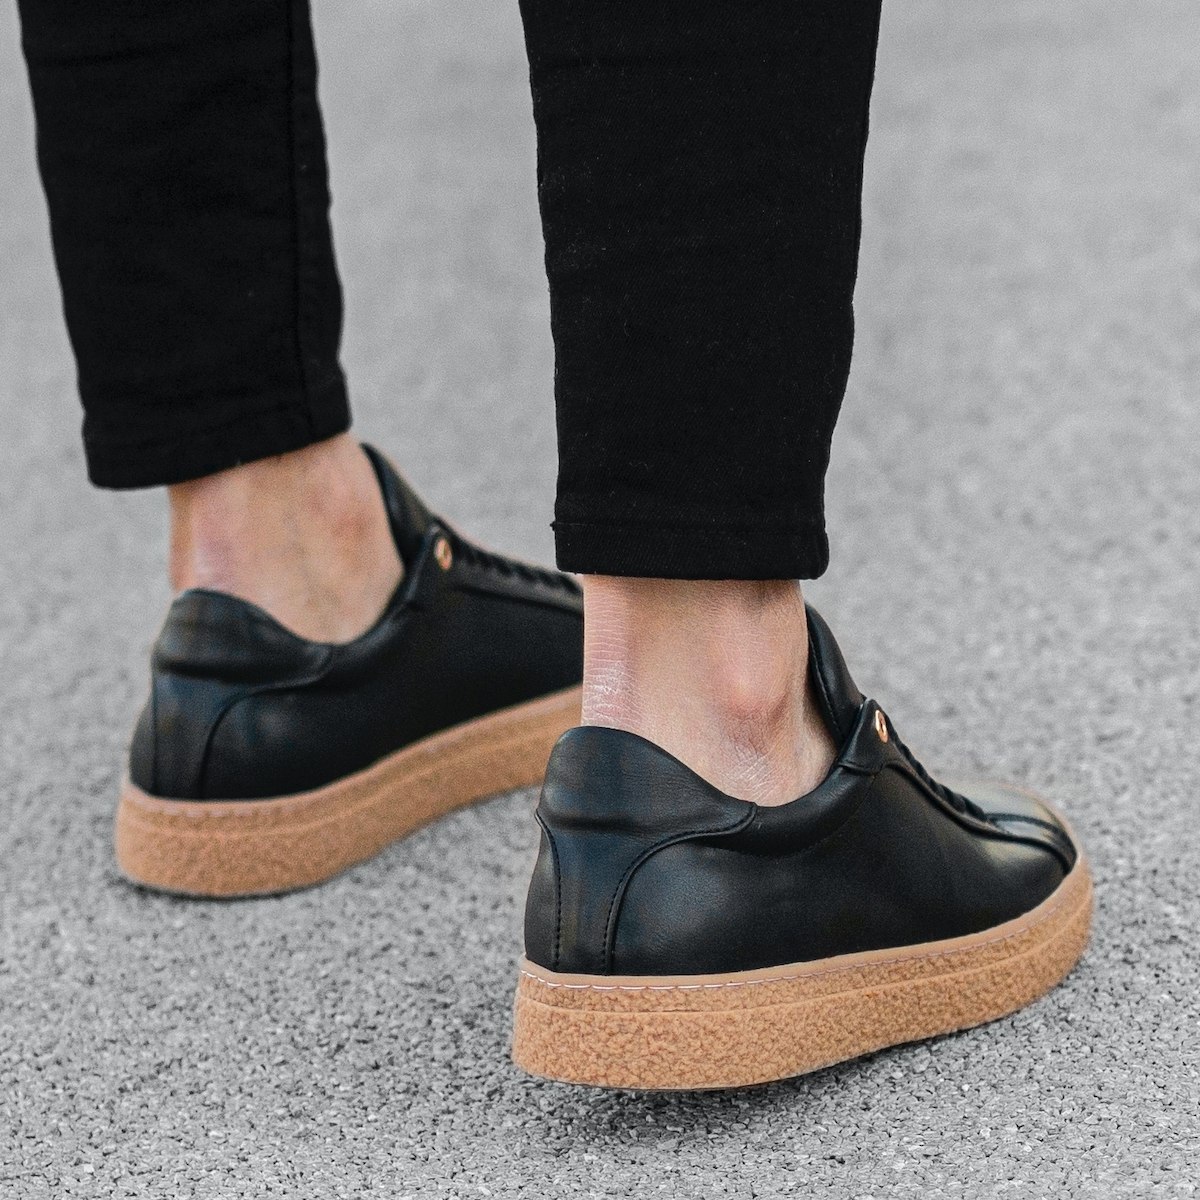 Men’s Rubber Sole Shoes Sneakers Black